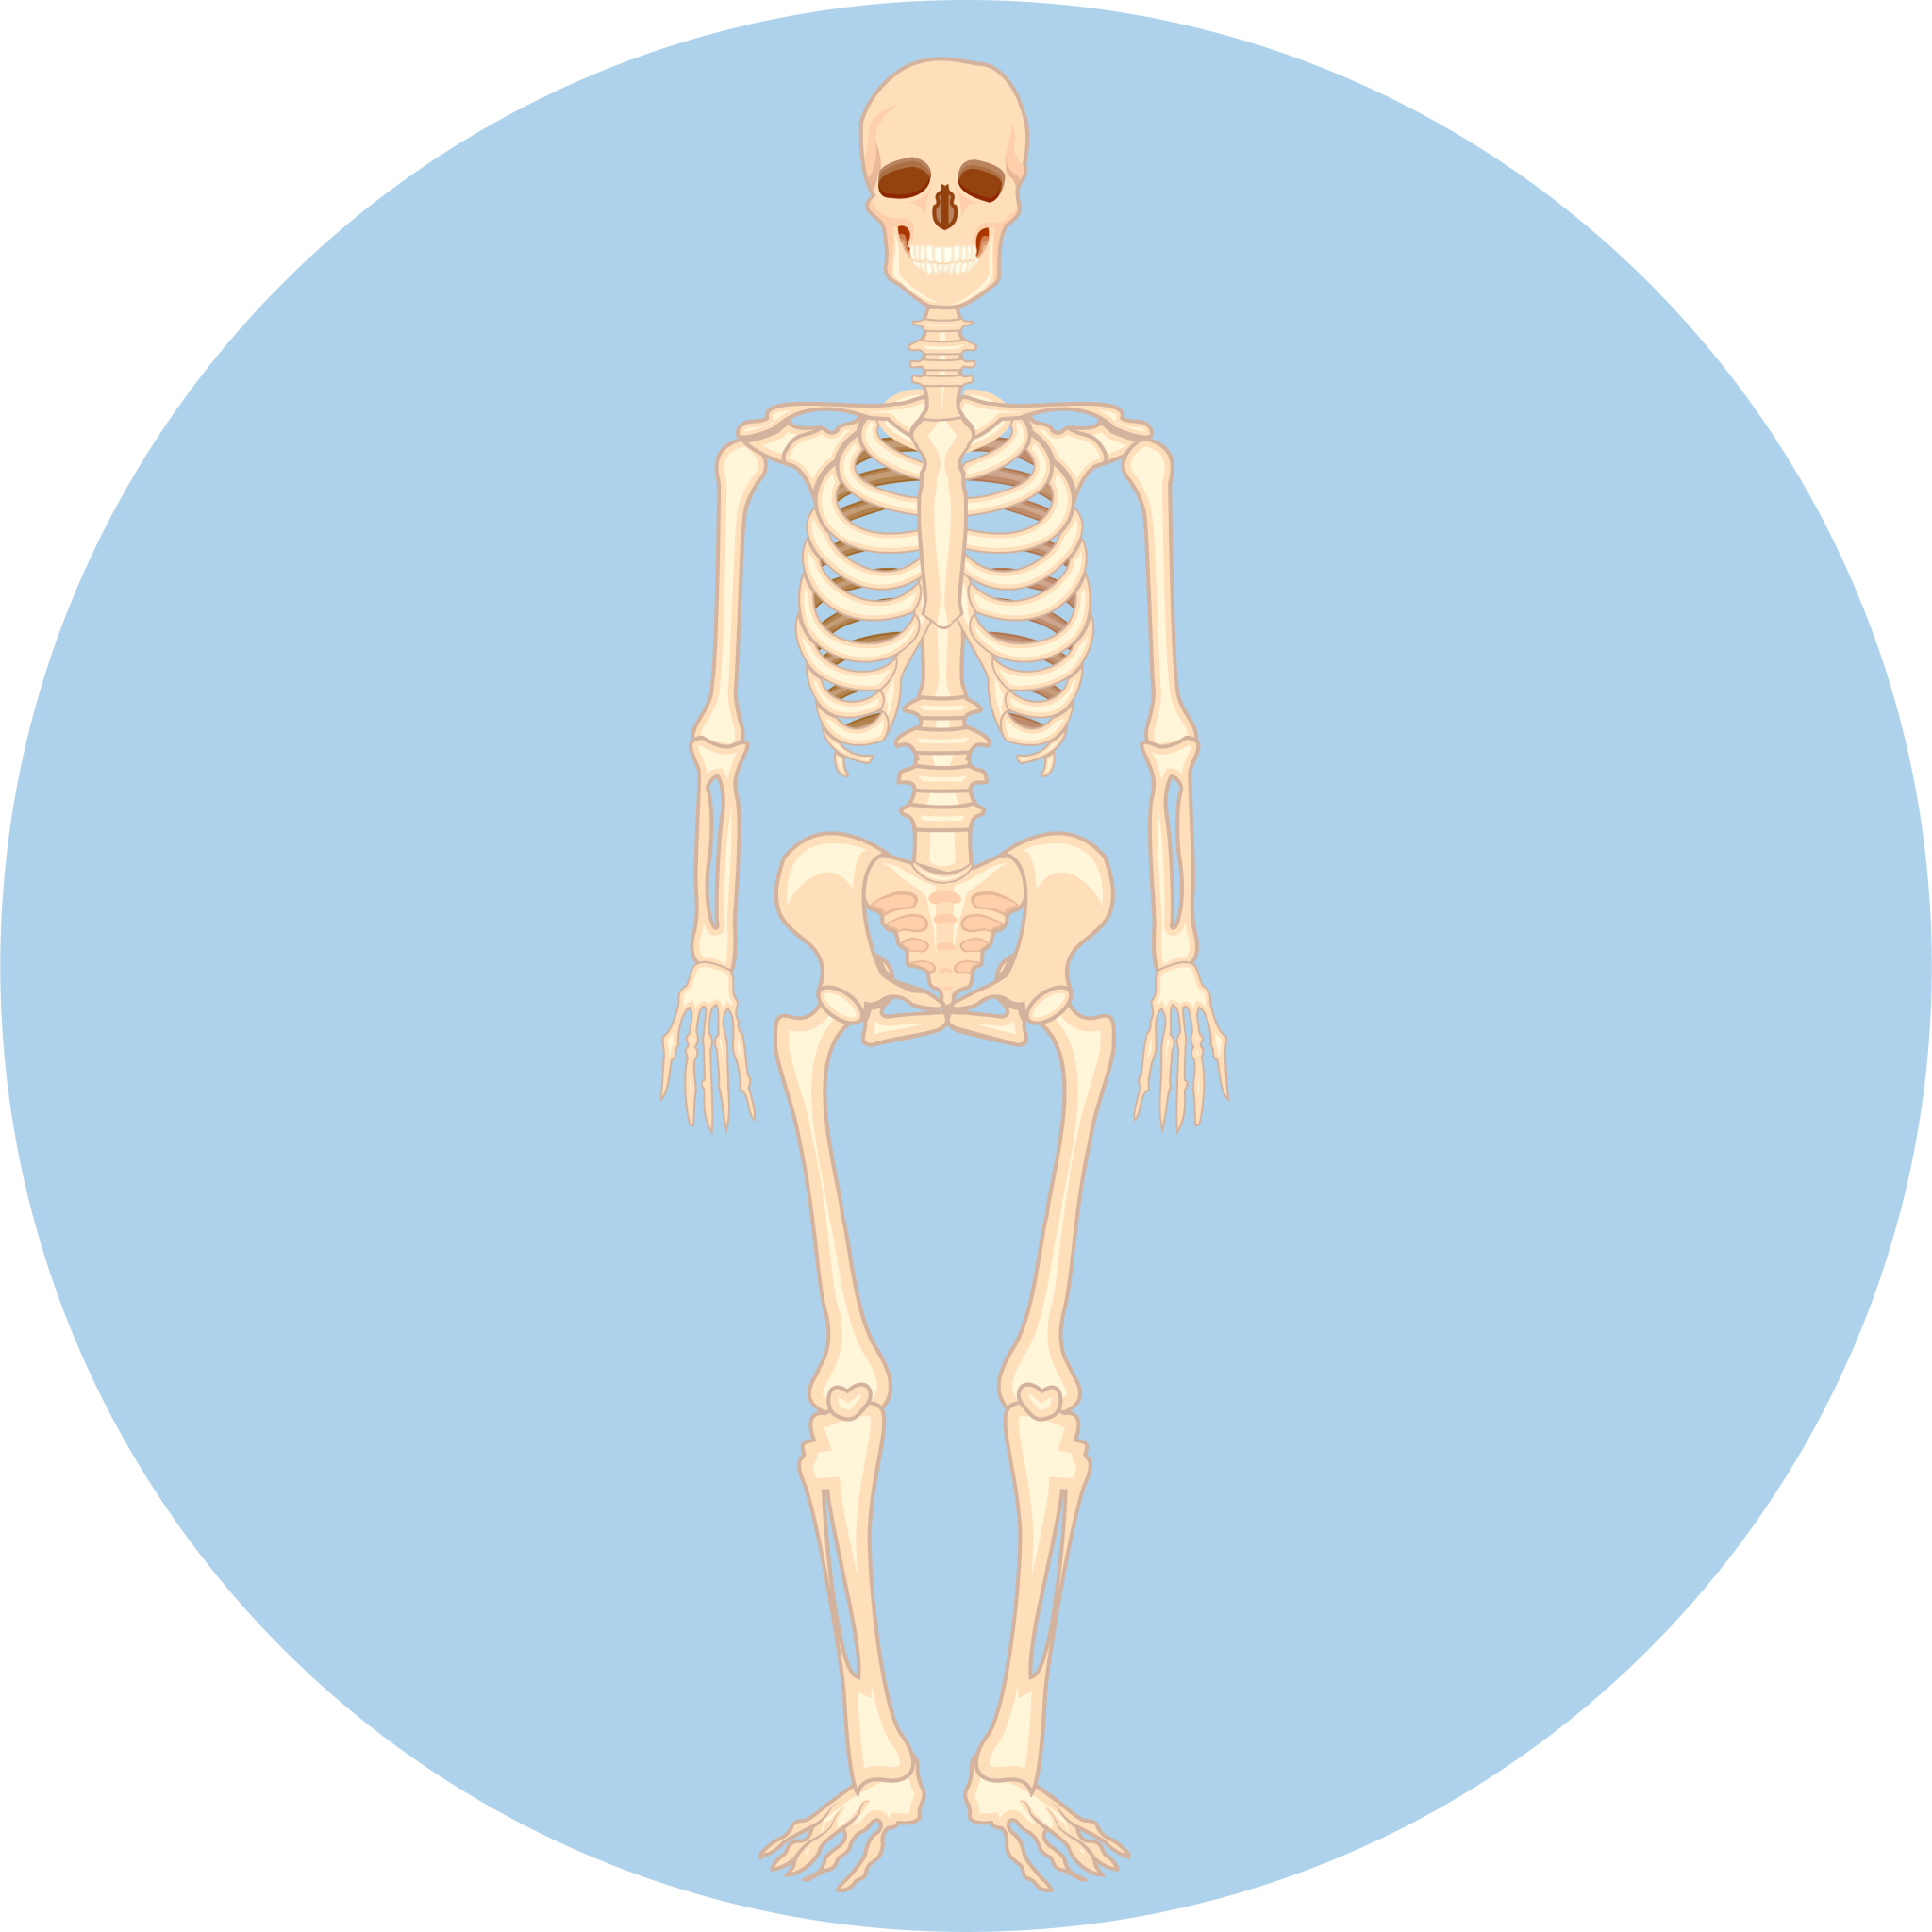 Skeltal Systems